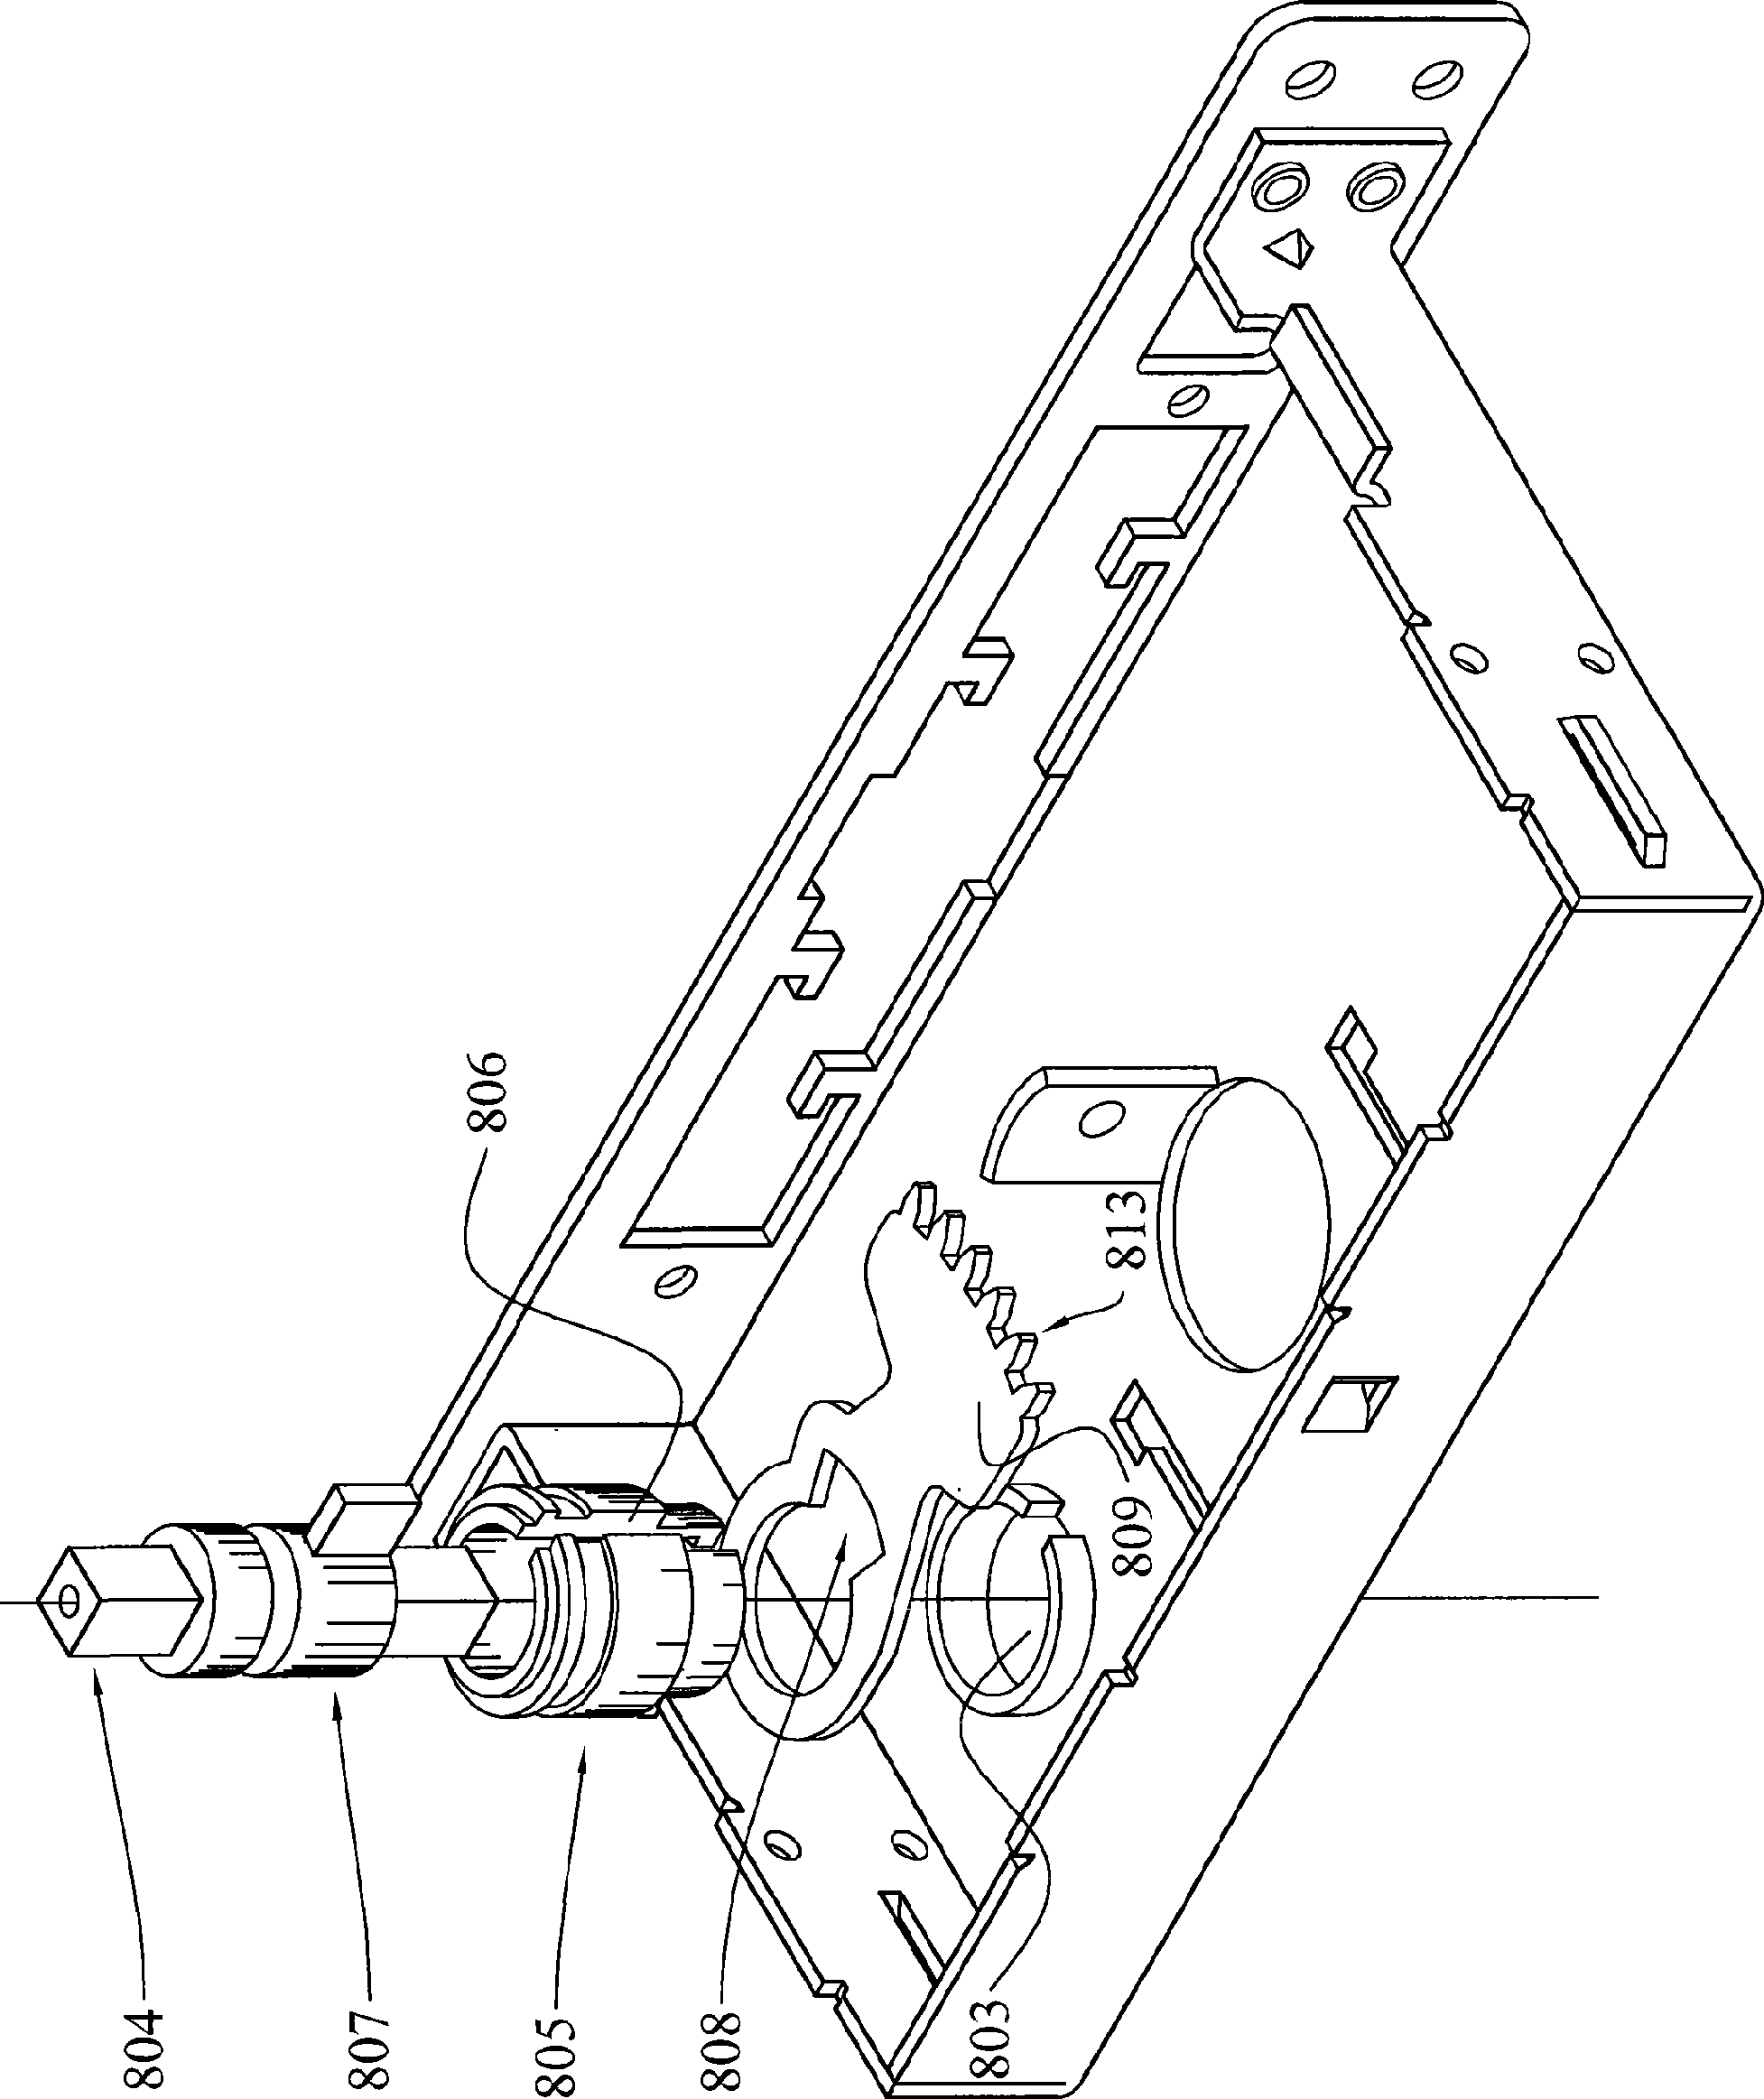 Bolt locking mechanism cooperated with door handle control mechanism